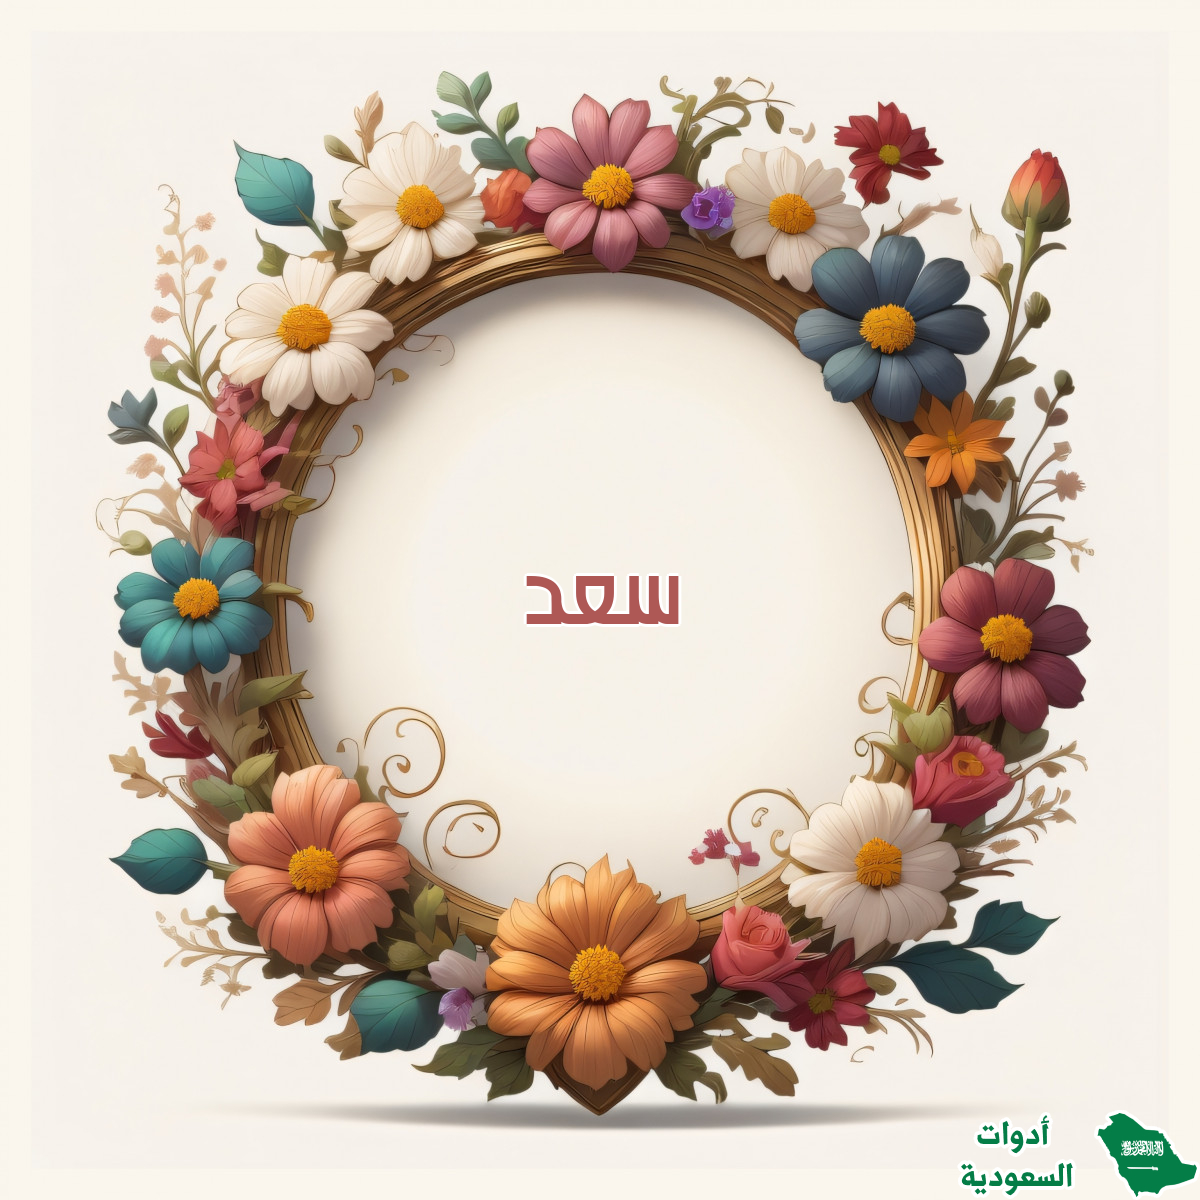 اسم سعد على صورة ضمن خدمة كتابة اسم داخل إطار من الزهور